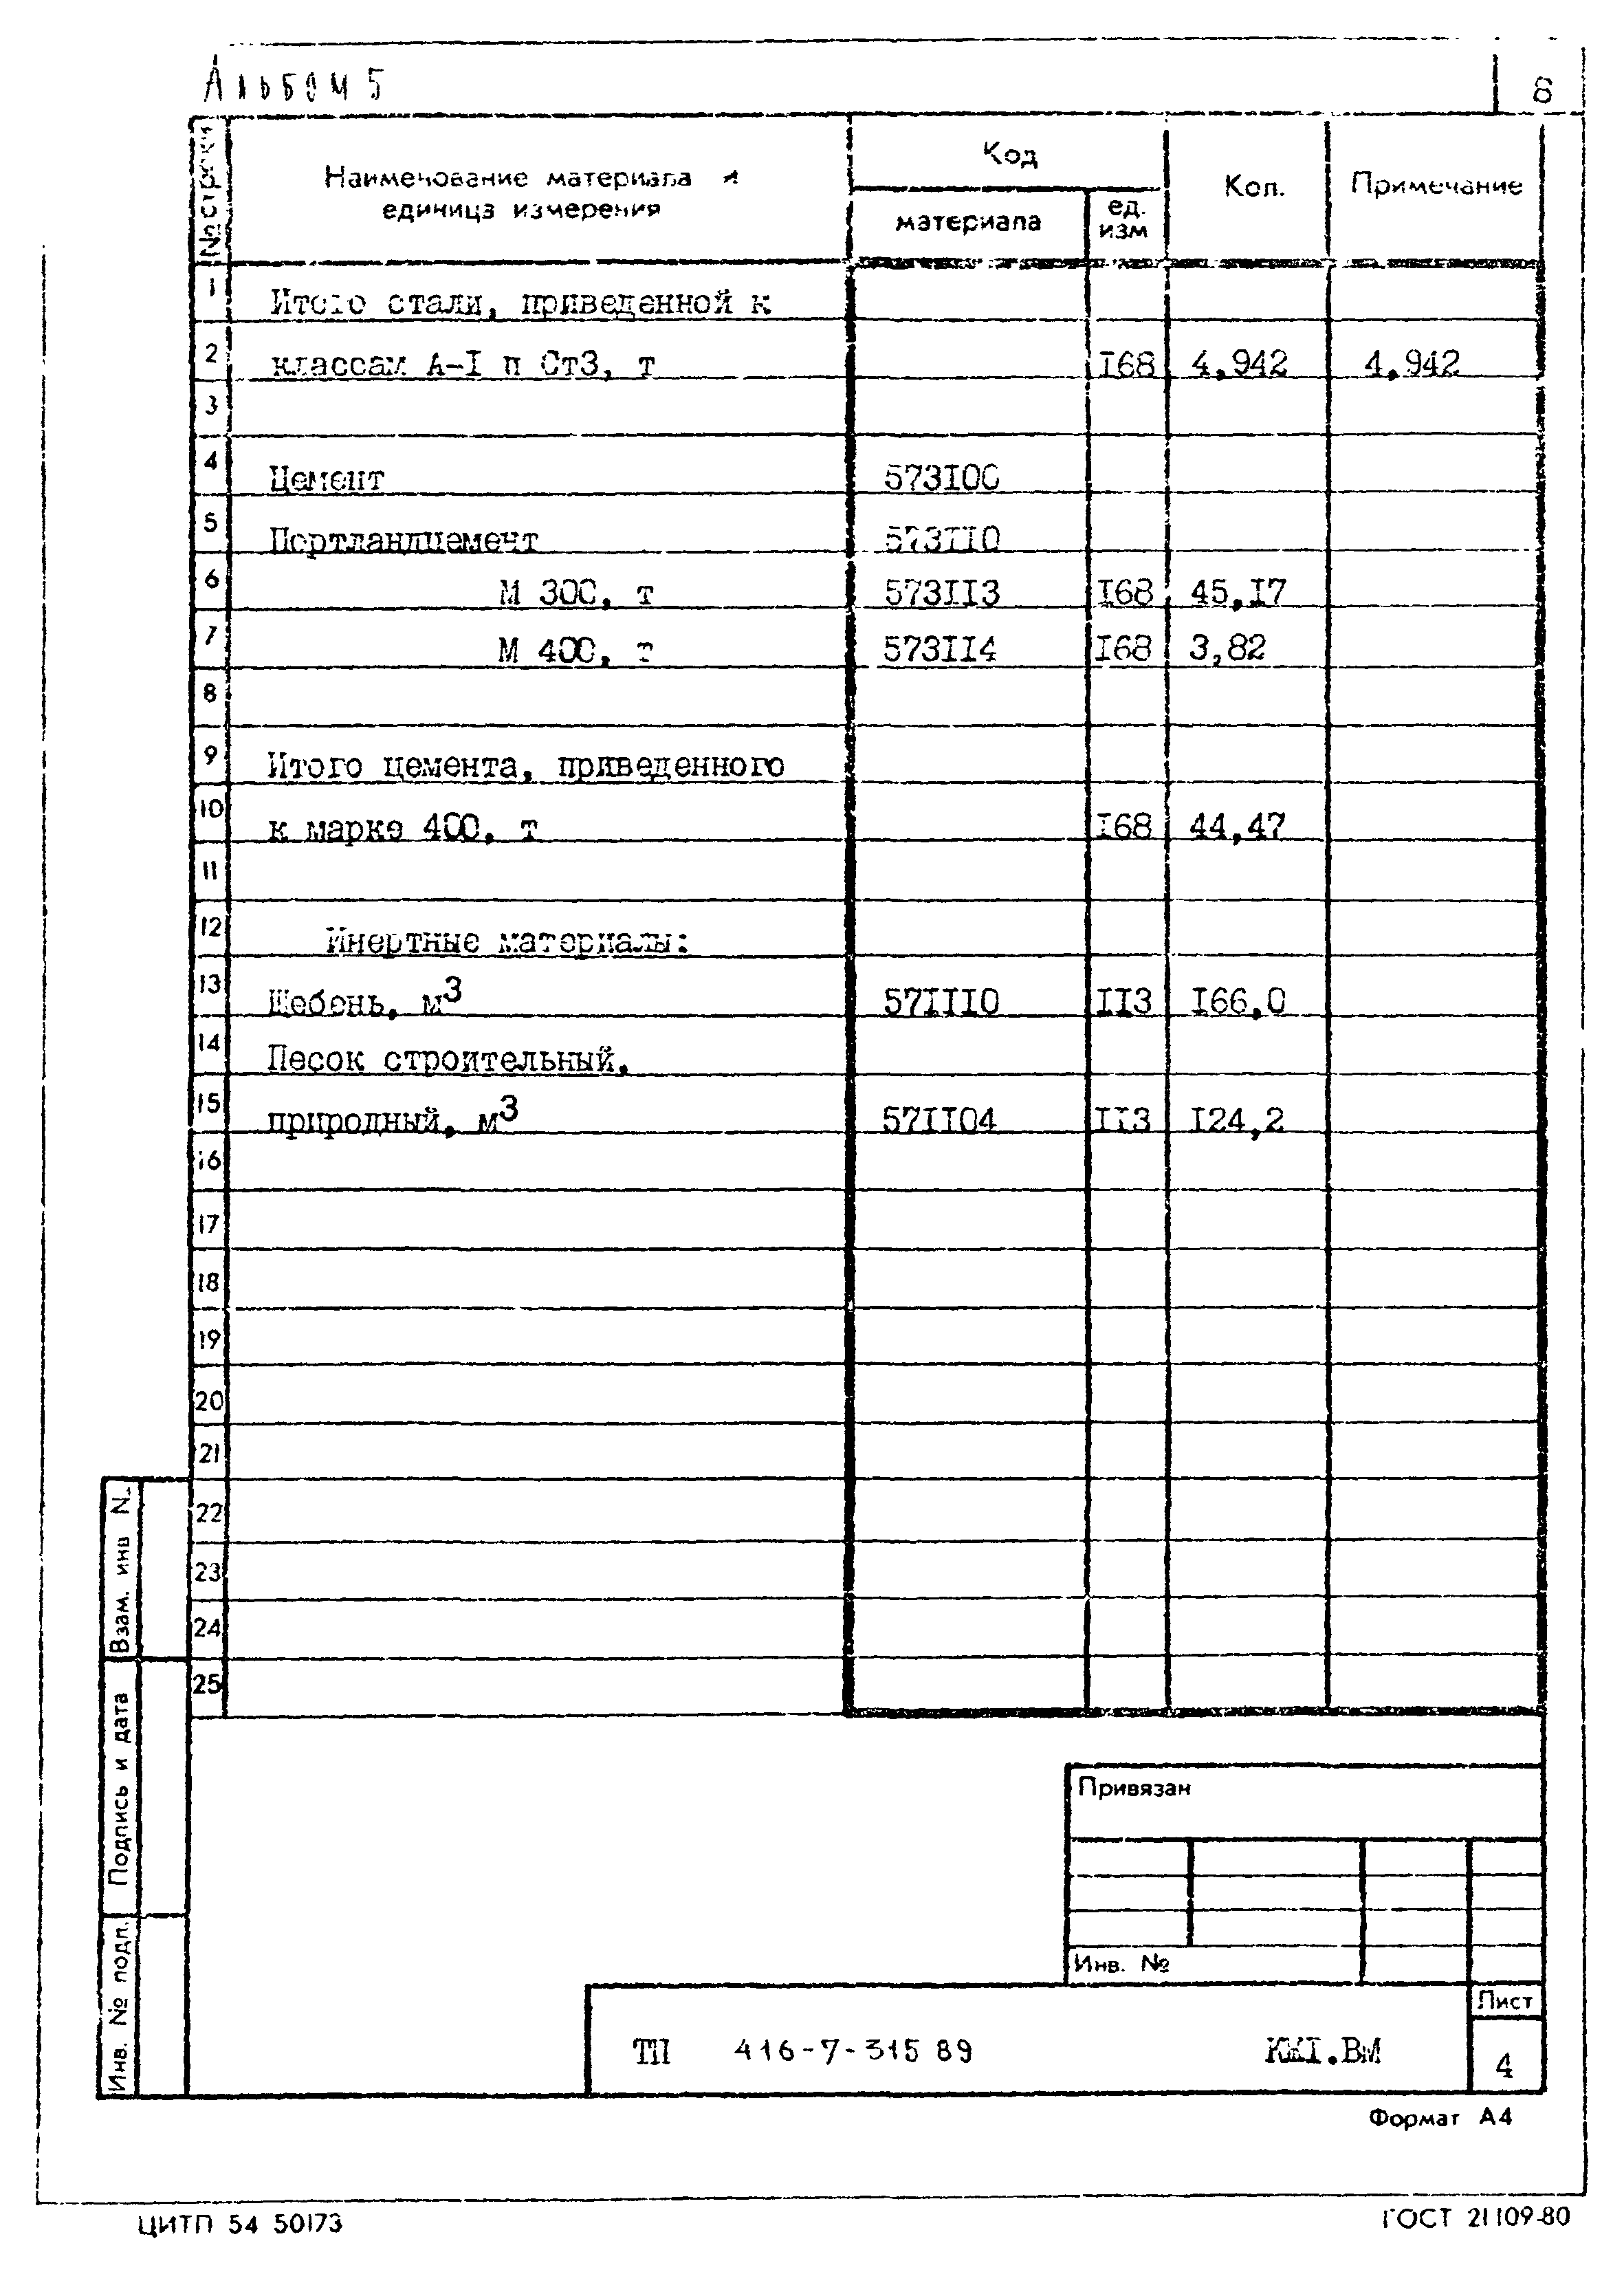 Типовой проект 416-7-315.89